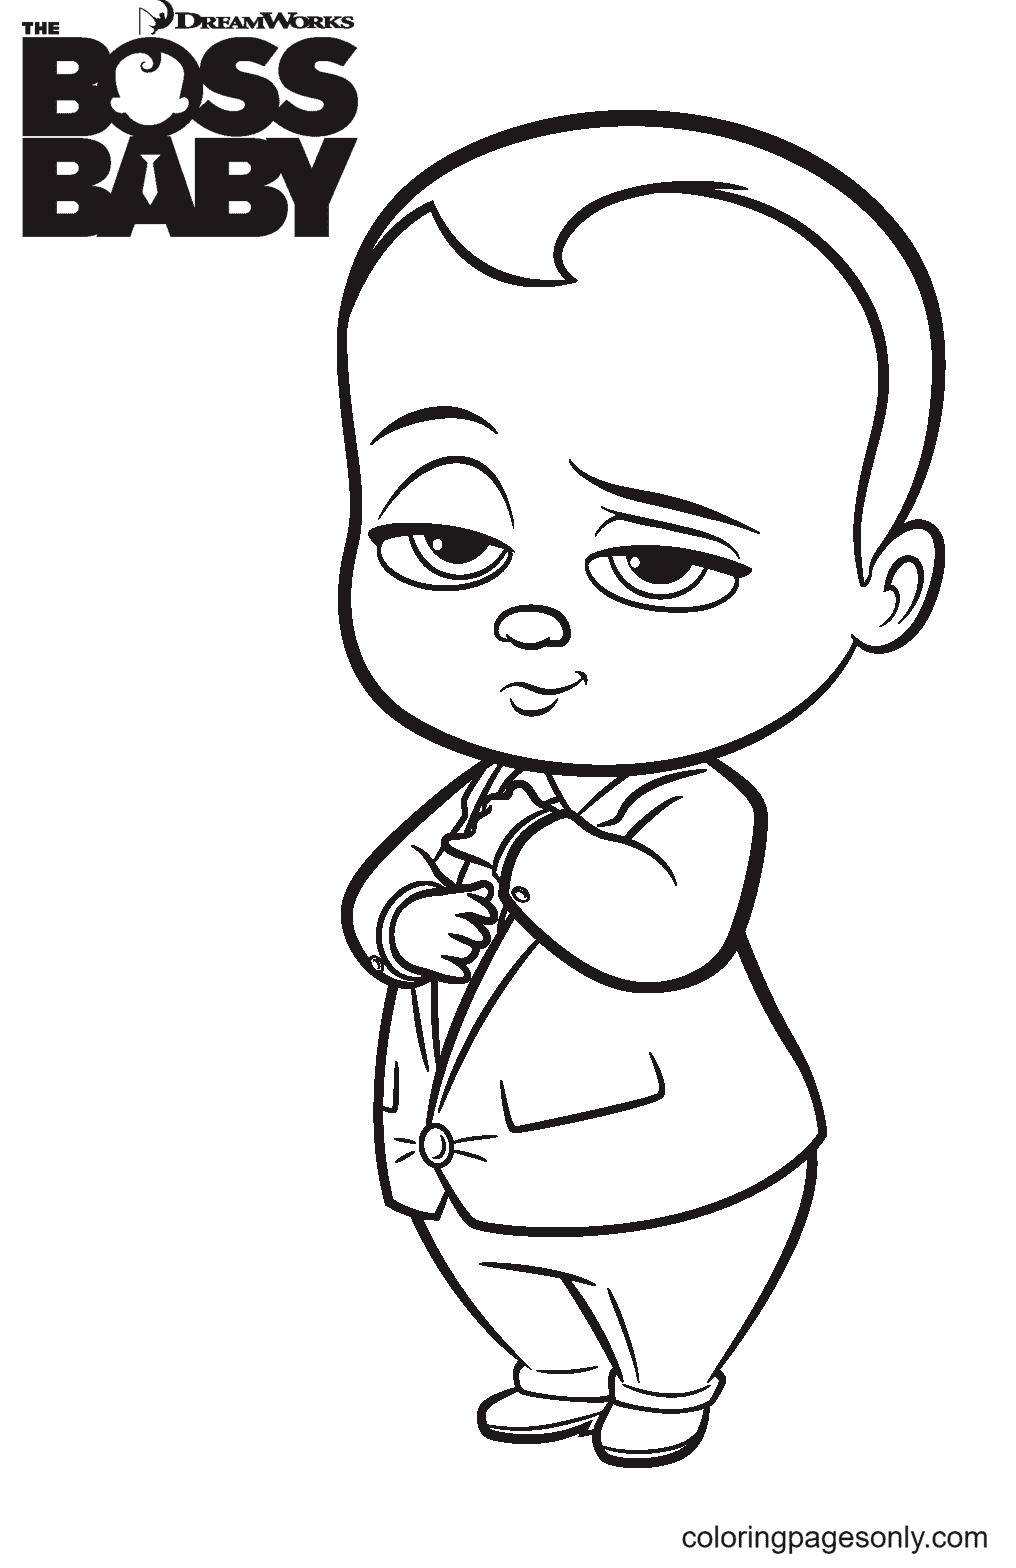 Desenho para colorir do bebê chefe legal